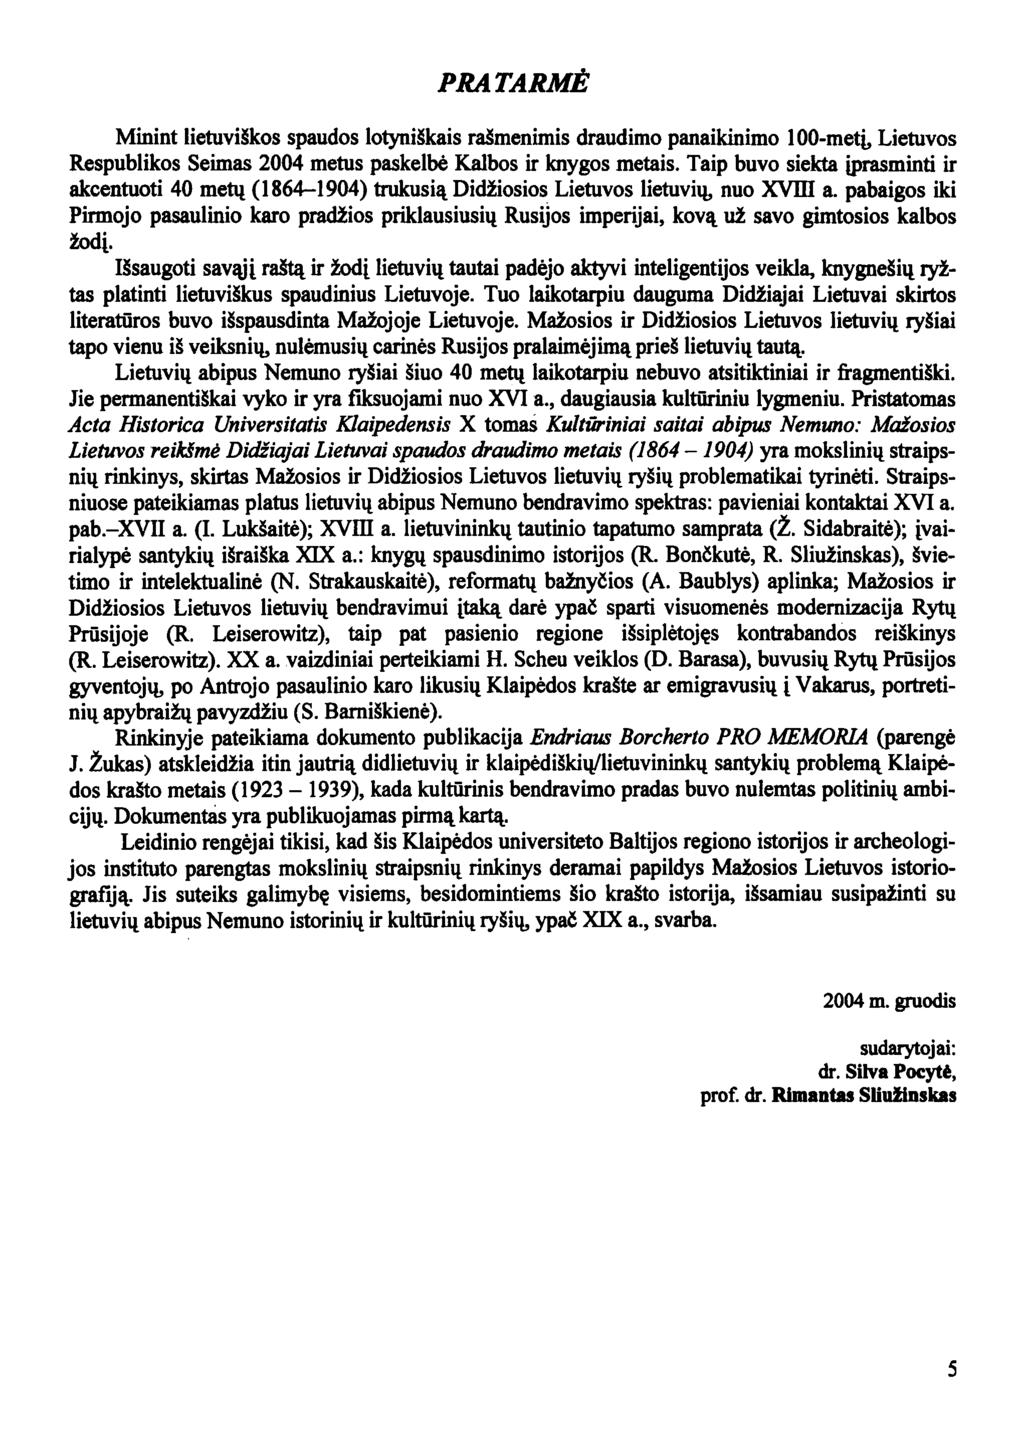 PRATARMĖ Minint lietuviškos spaudos lotyniškais rašmenimis draudimo panaikinimo 100-metį, Lietuvos Respublikos Seimas 2004 metus paskelbė Kalbos ir knygos metais.